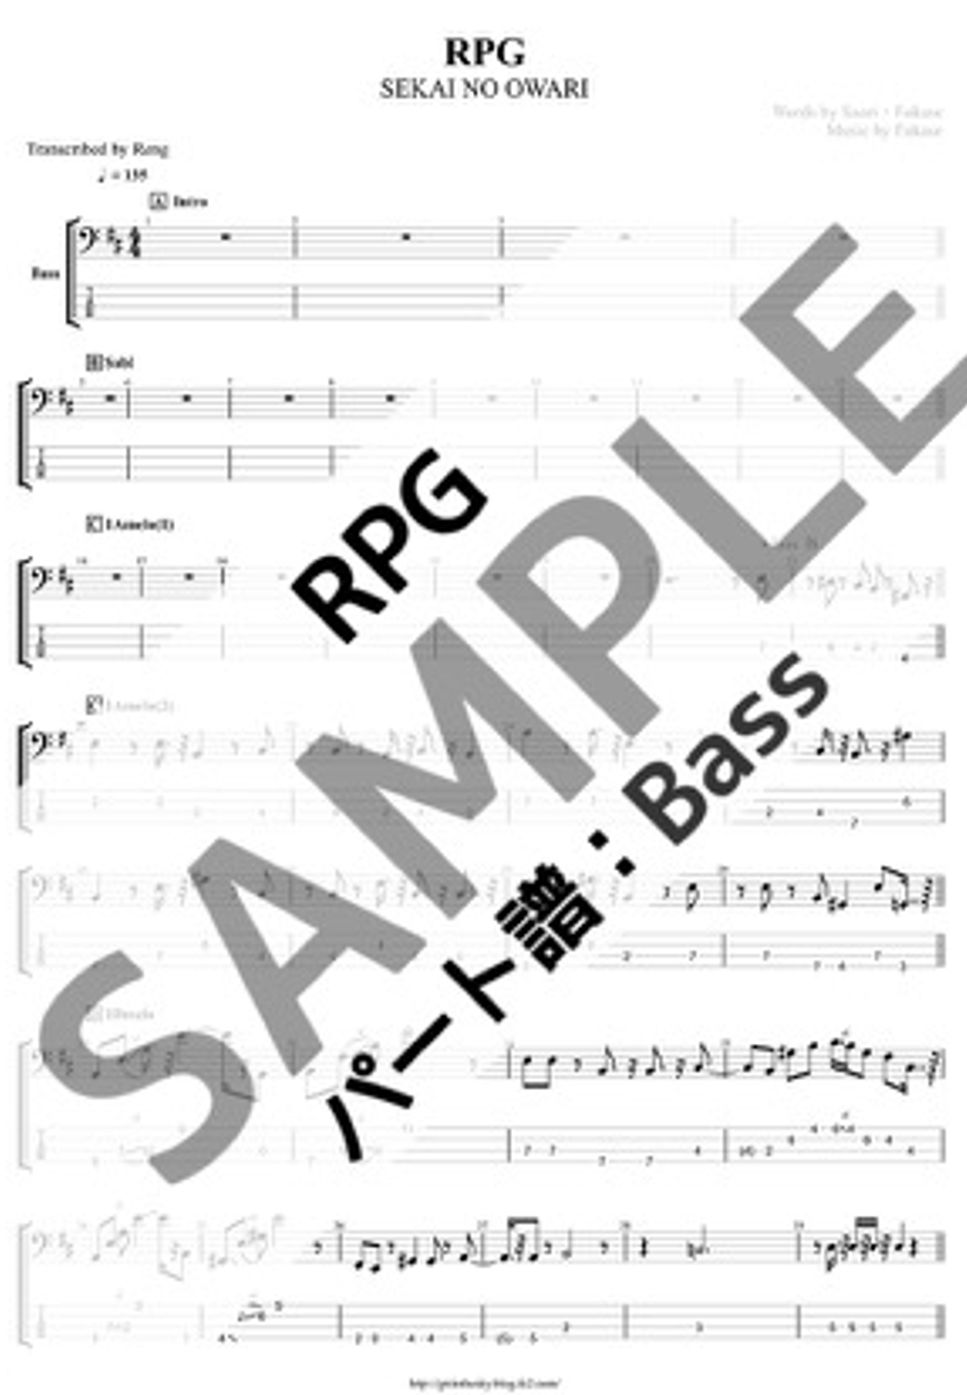 SEKAI NO OWARI - RPG (Bass/TAB譜) by Score by Reng